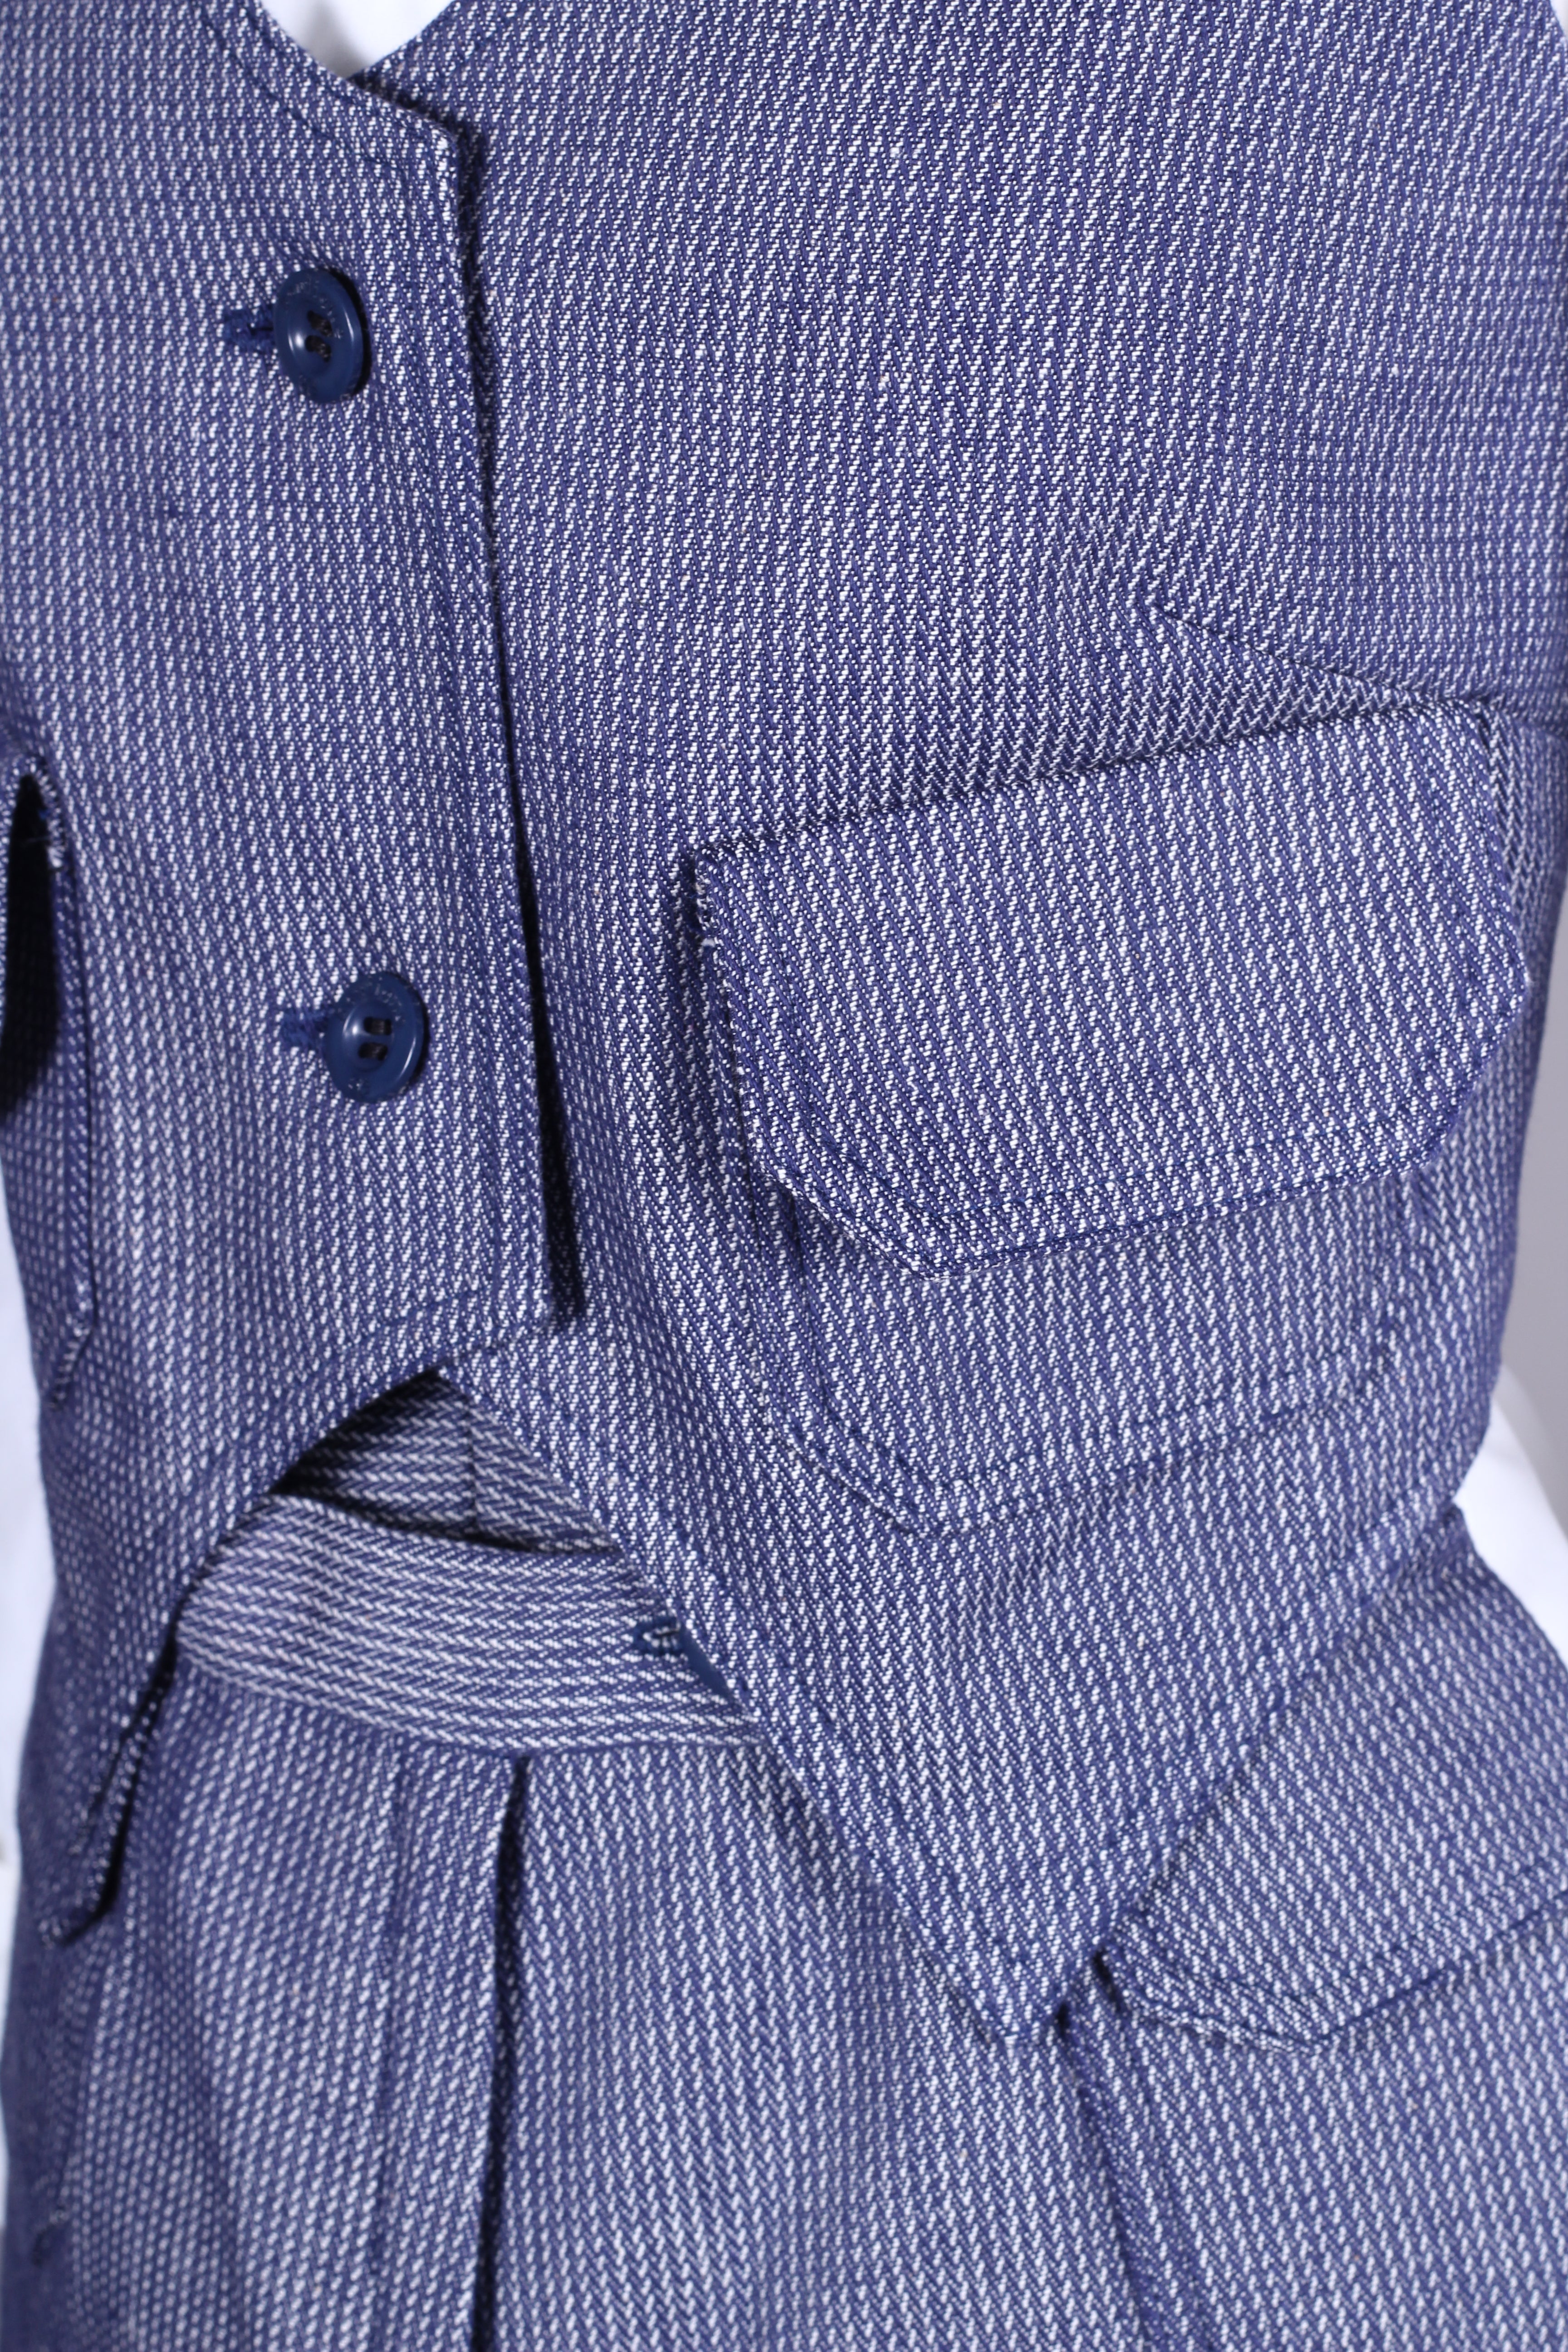 Blå og hvidstribet vest med bukser. Slut. 1960'erne. Xs